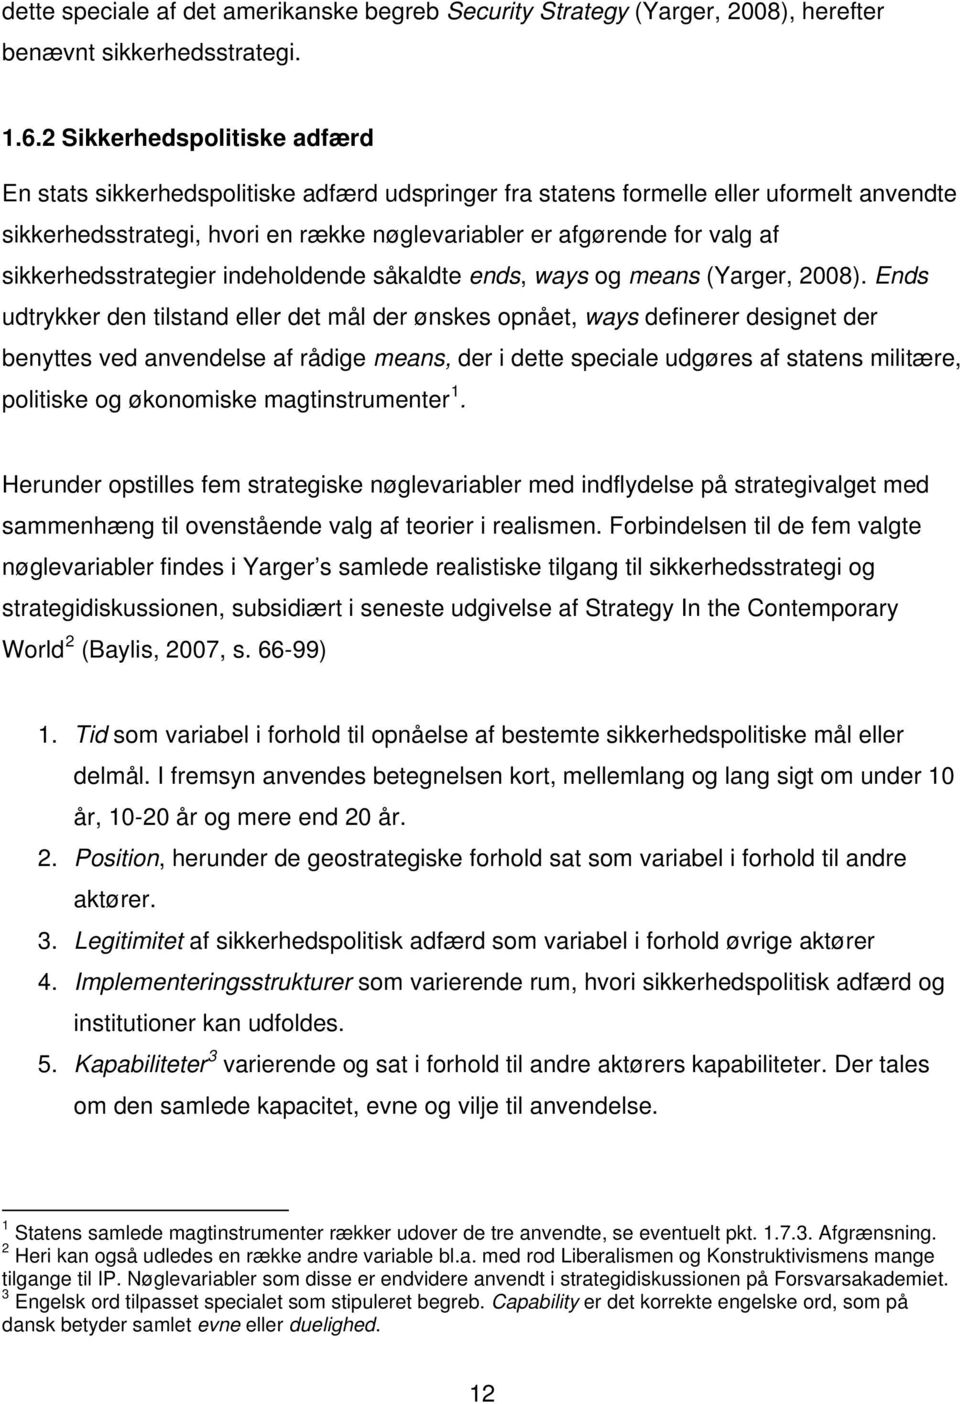 sikkerhedsstrategier indeholdende såkaldte ends, ways og means (Yarger, 2008).